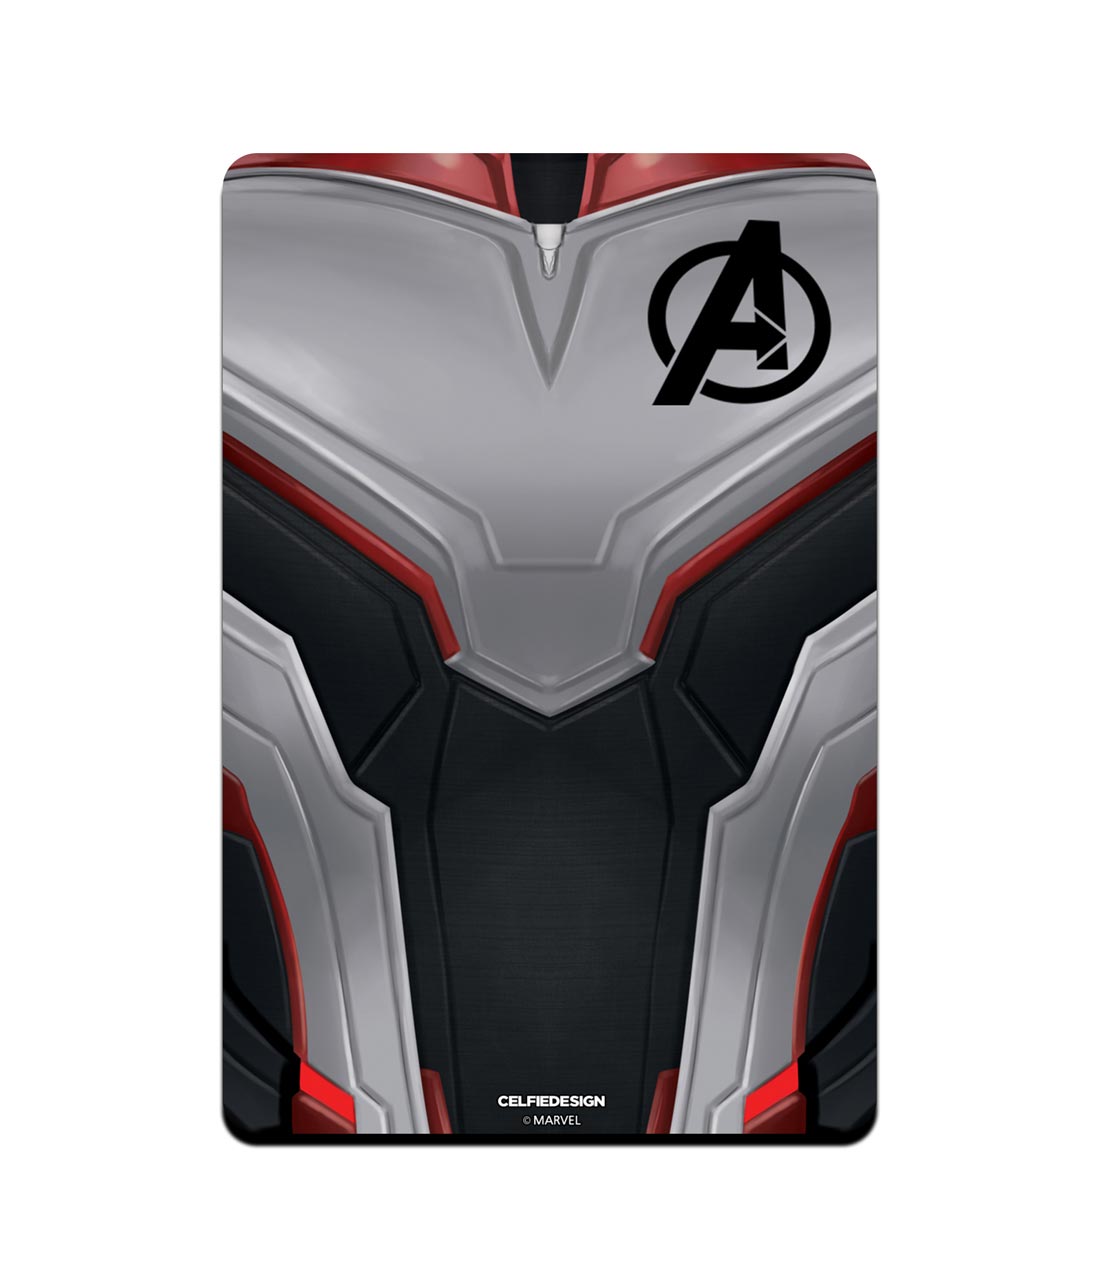 Avengers Endgame Suit - Fridge Magnets